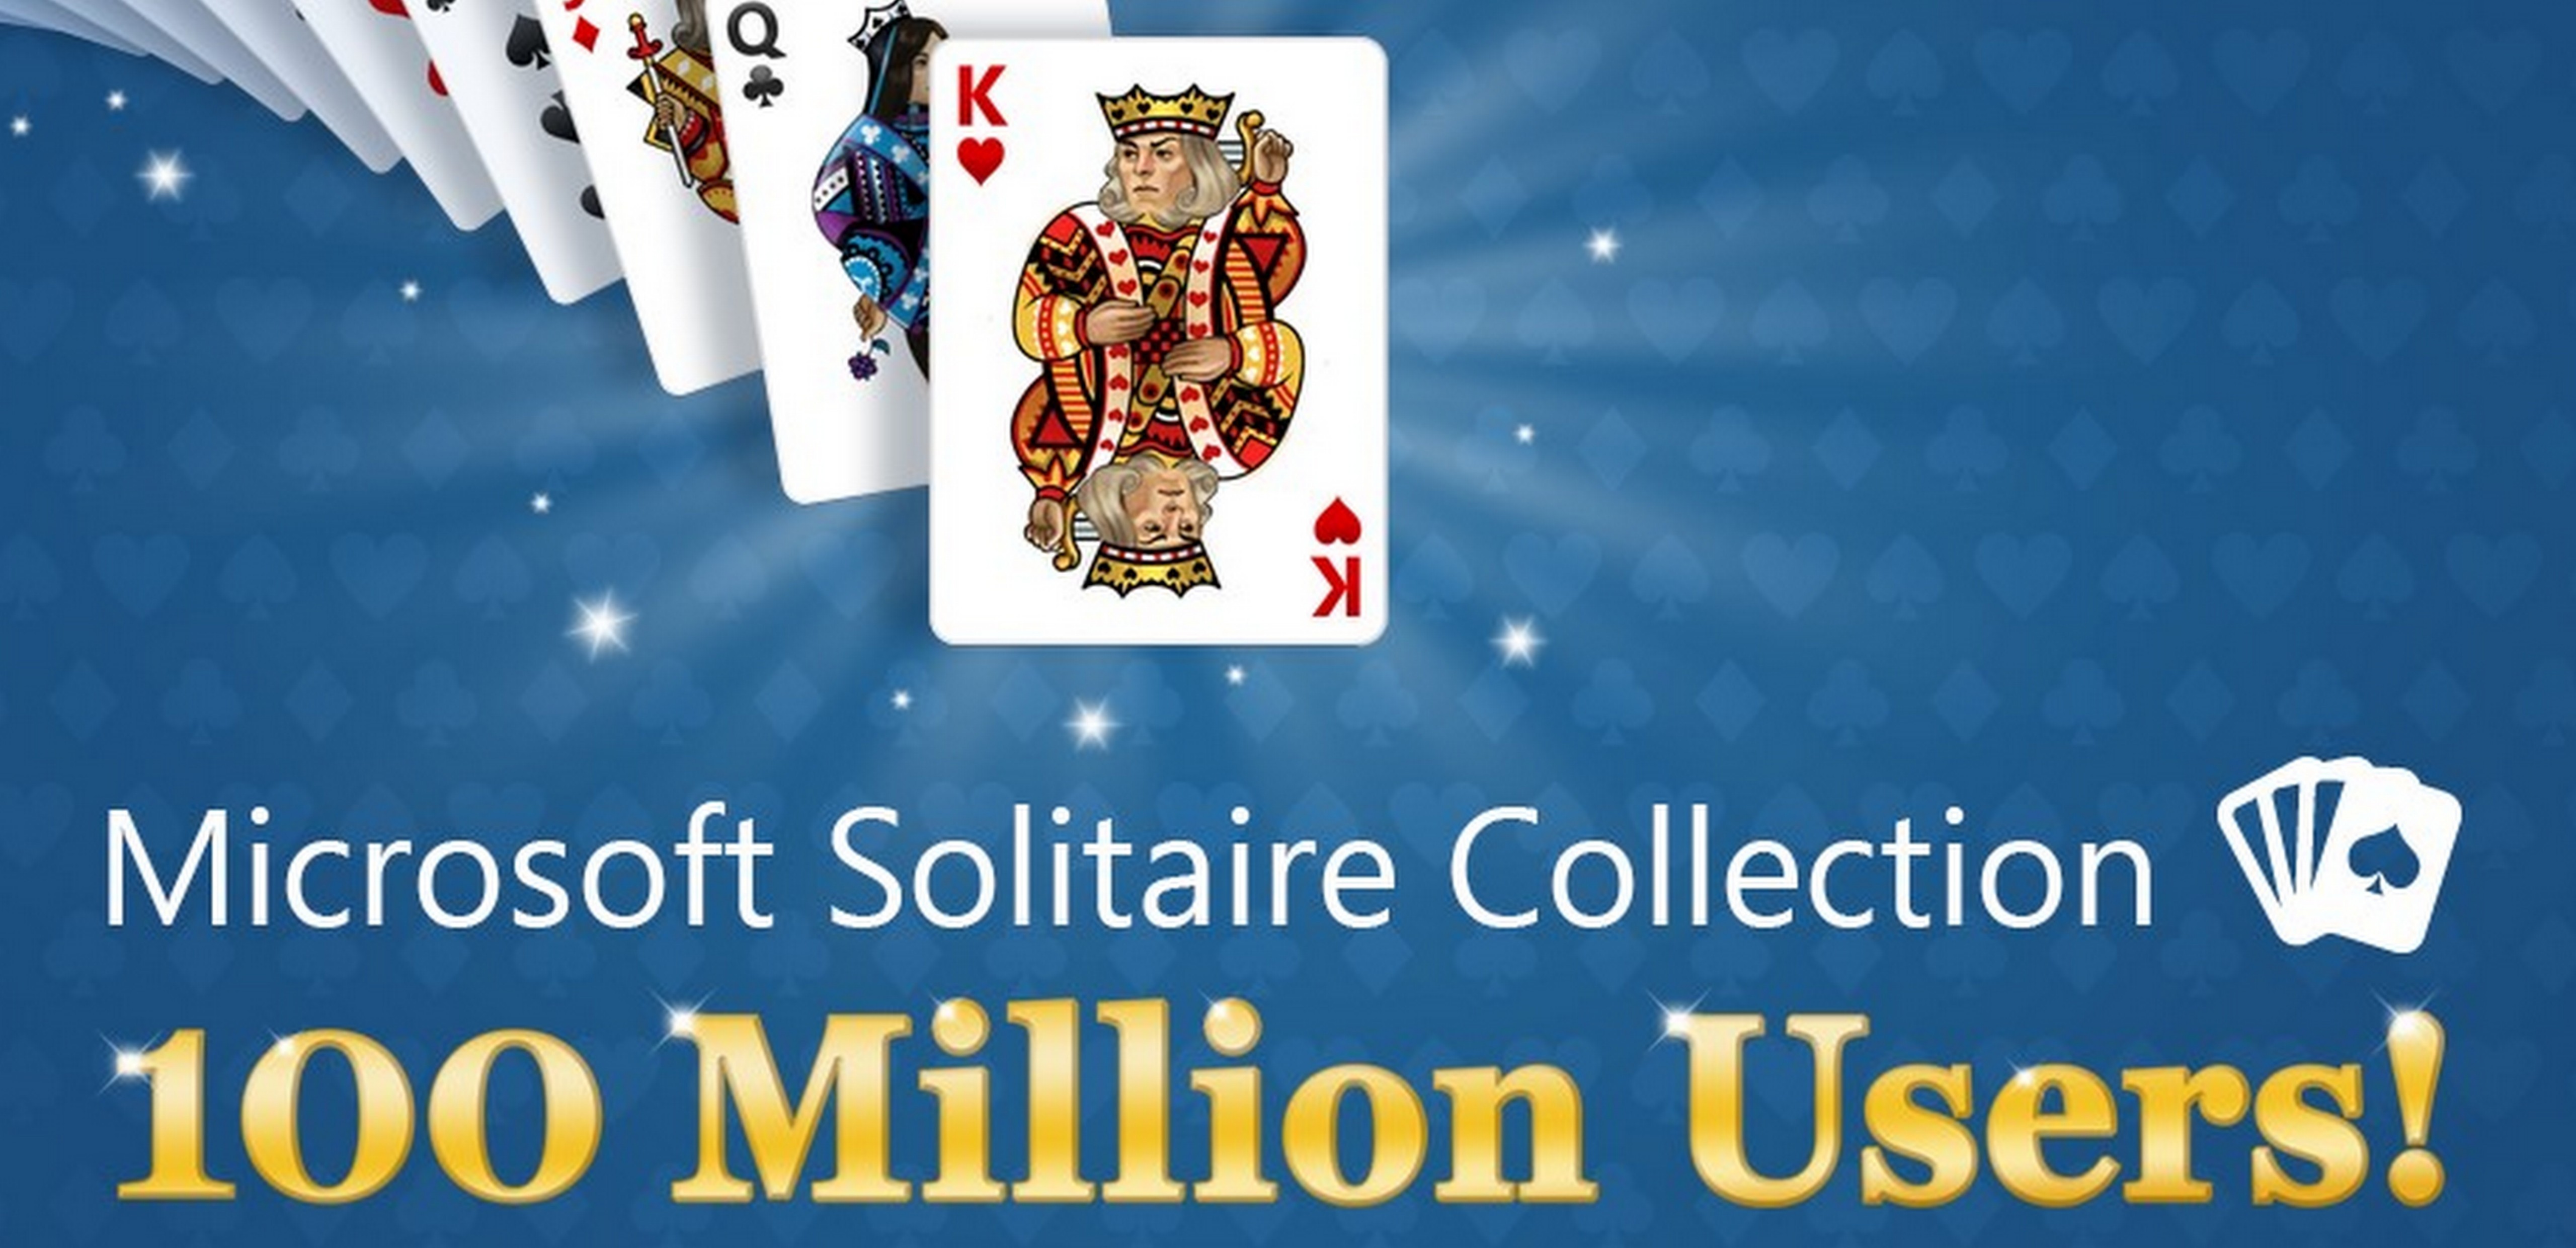 Microsoft Solitaire Collection hits milestone: 100 million unique users